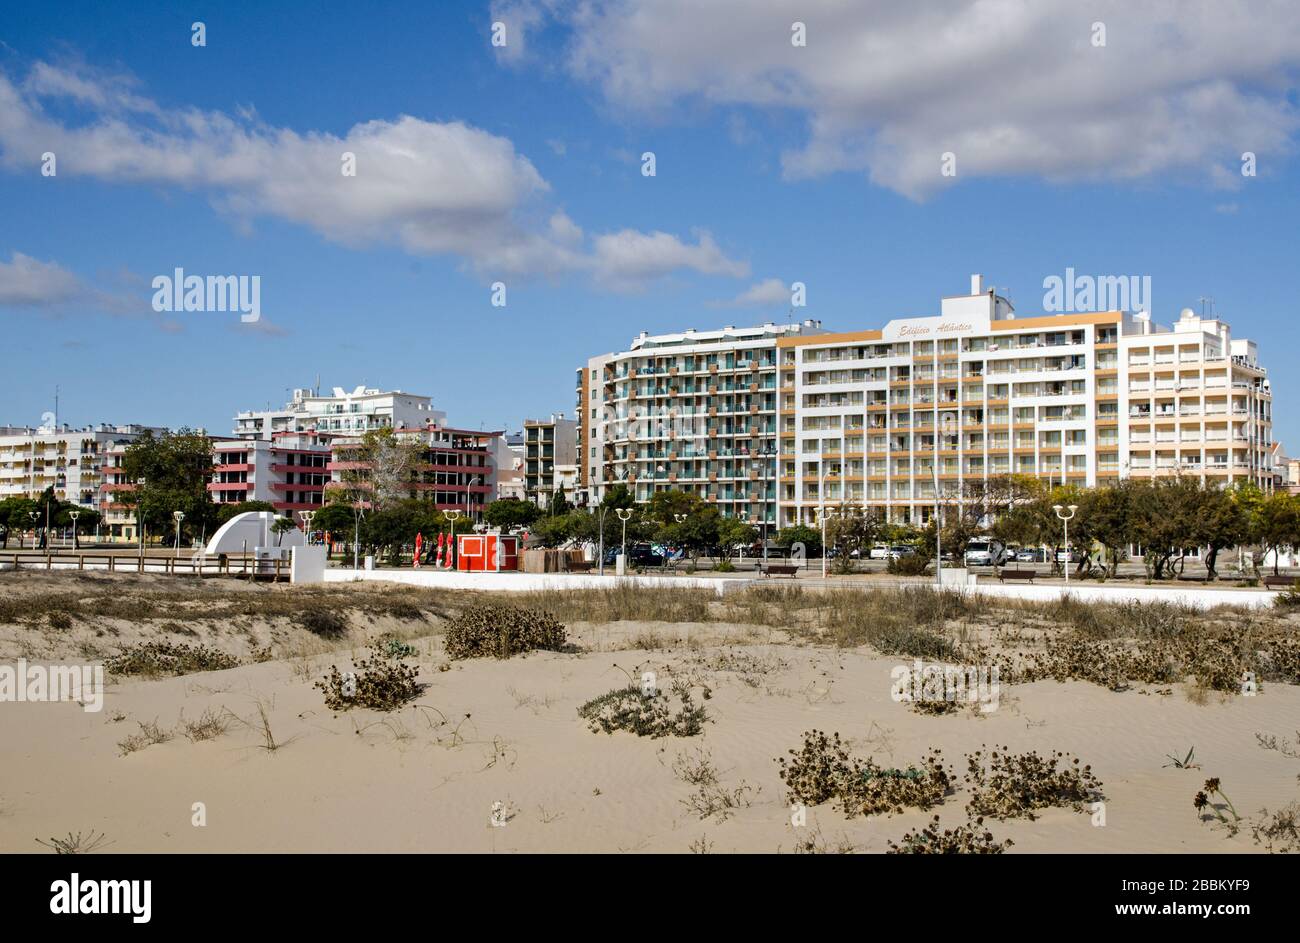 Monte Gordo, Portogallo - 18 novembre 2019: Appartamenti con vista sulla spiaggia di sabbia della località di Monte Gordo sulla costa portoghese dell'Algarve. Foto Stock